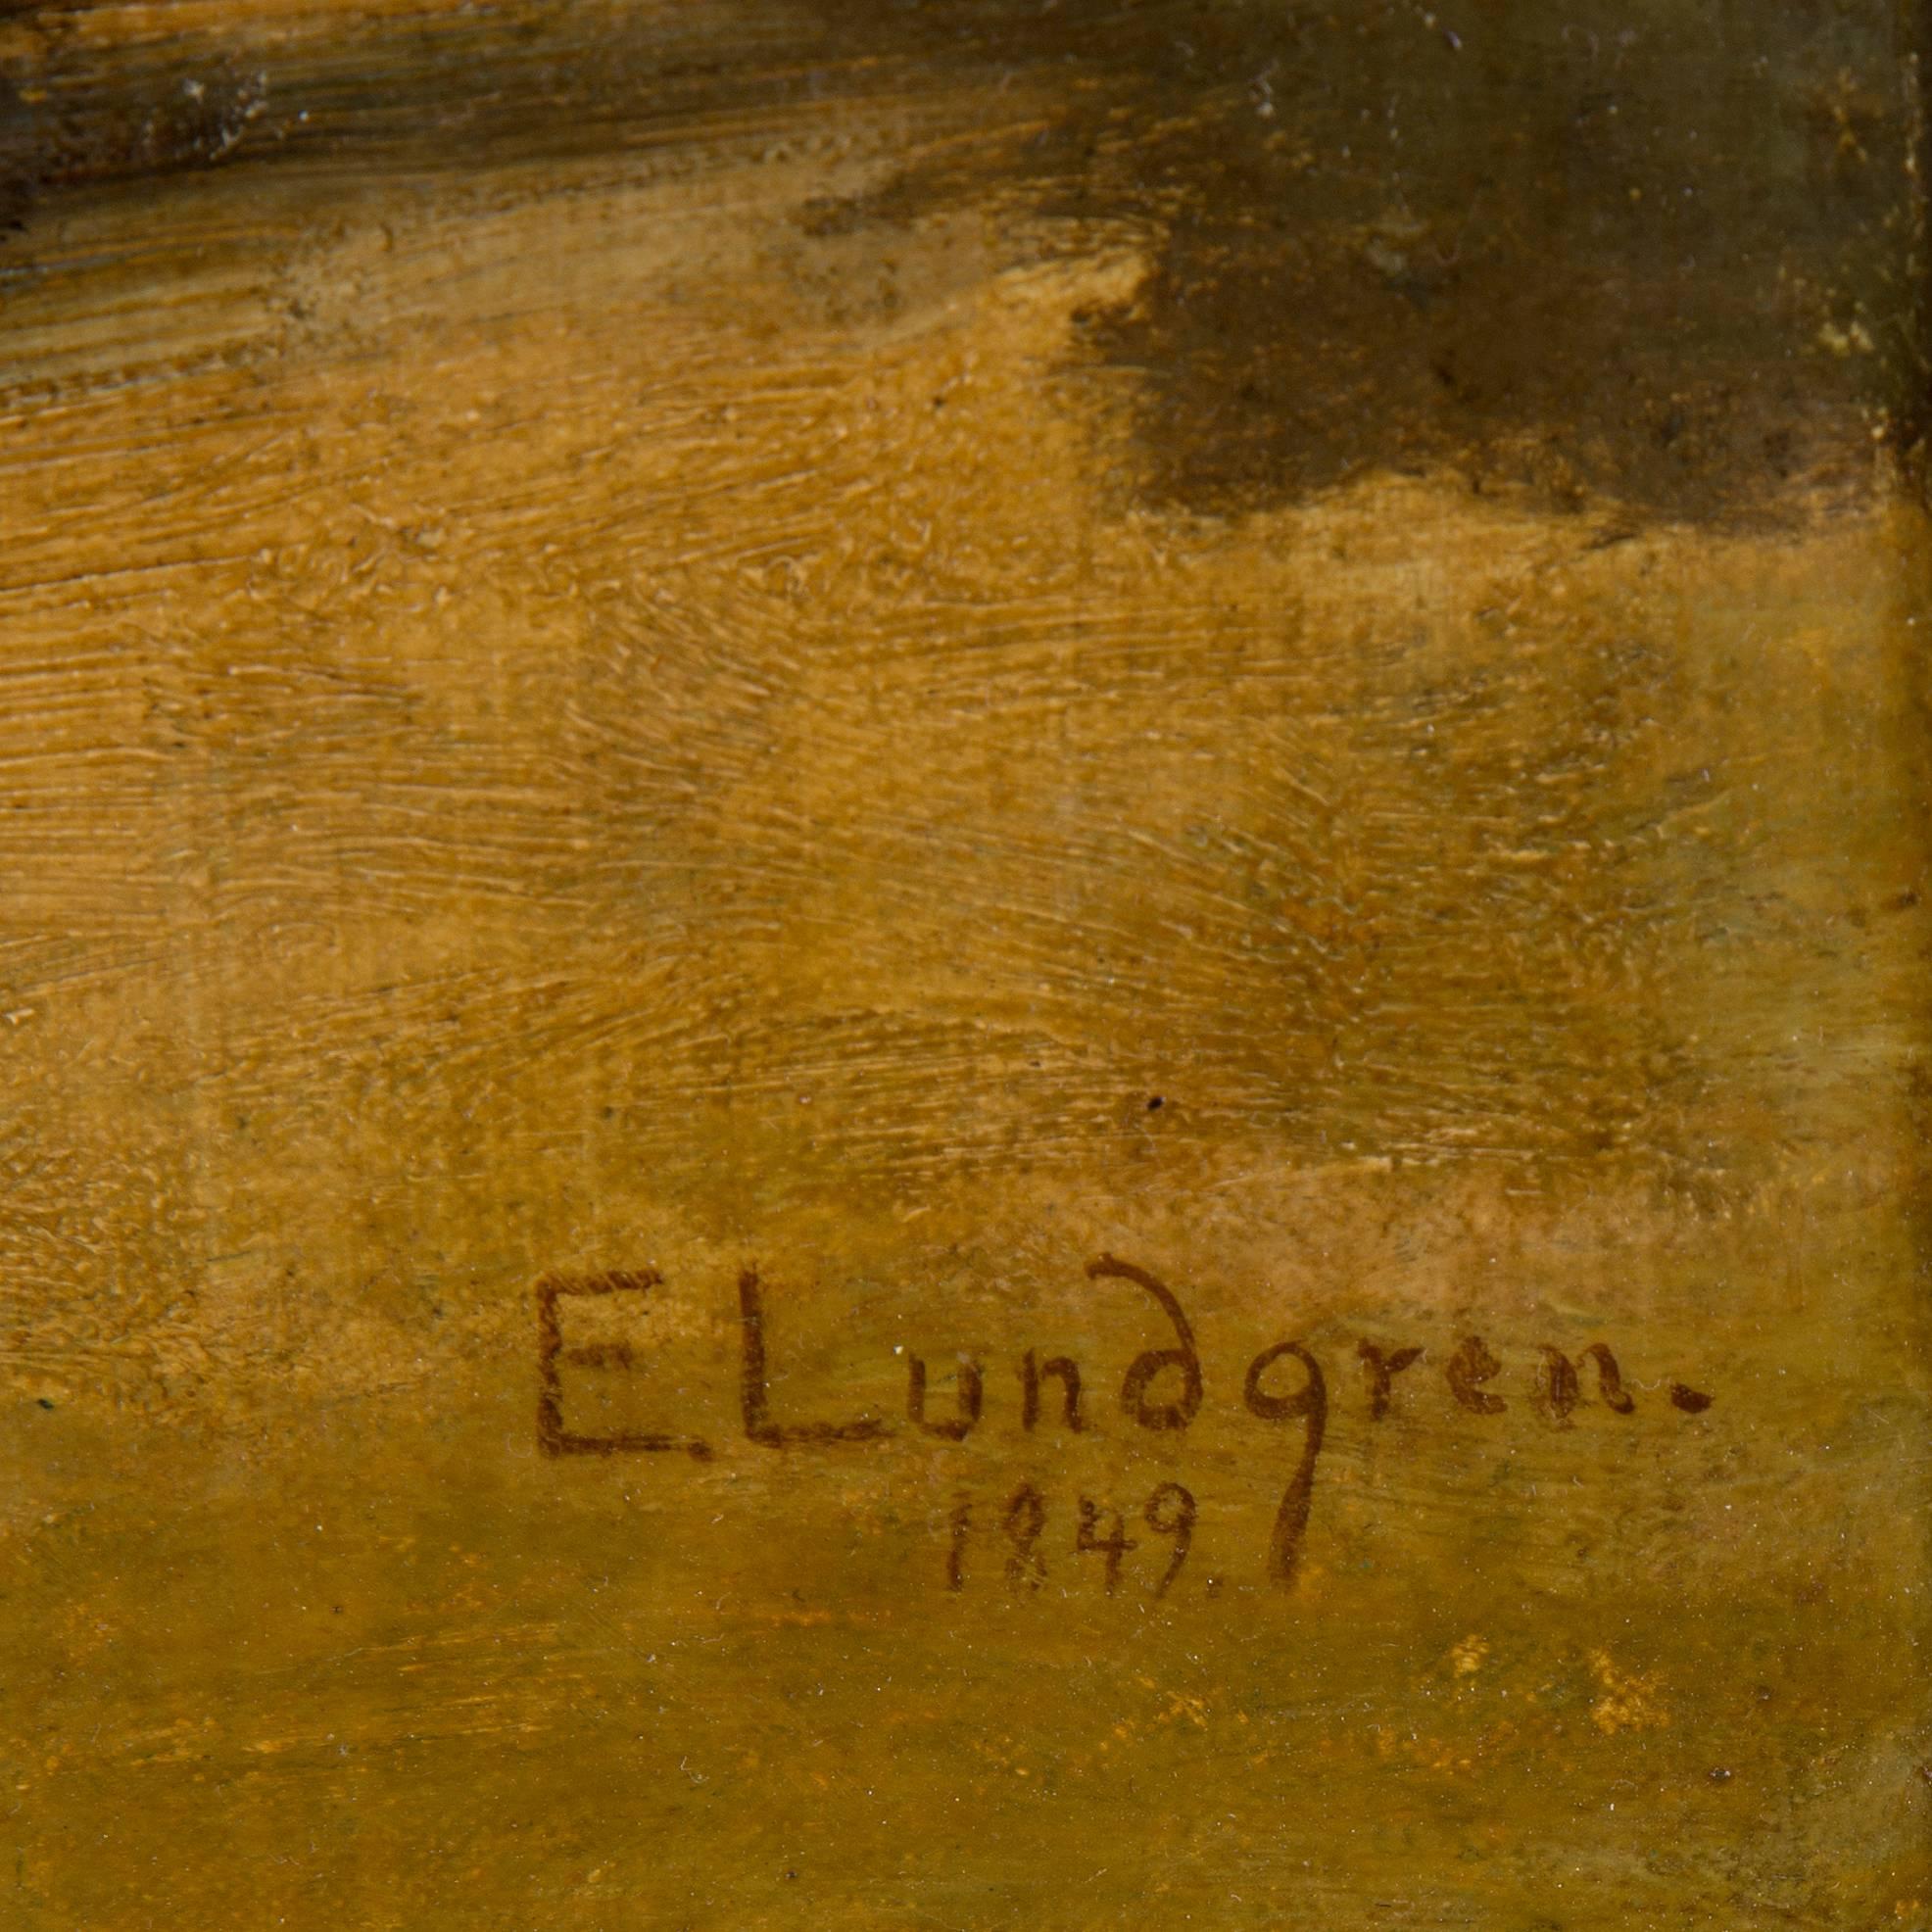 Egron Lundgren, huile sur toile marouflée, signée et datée de 1849.
Dimensions :
46 x 38 cm.